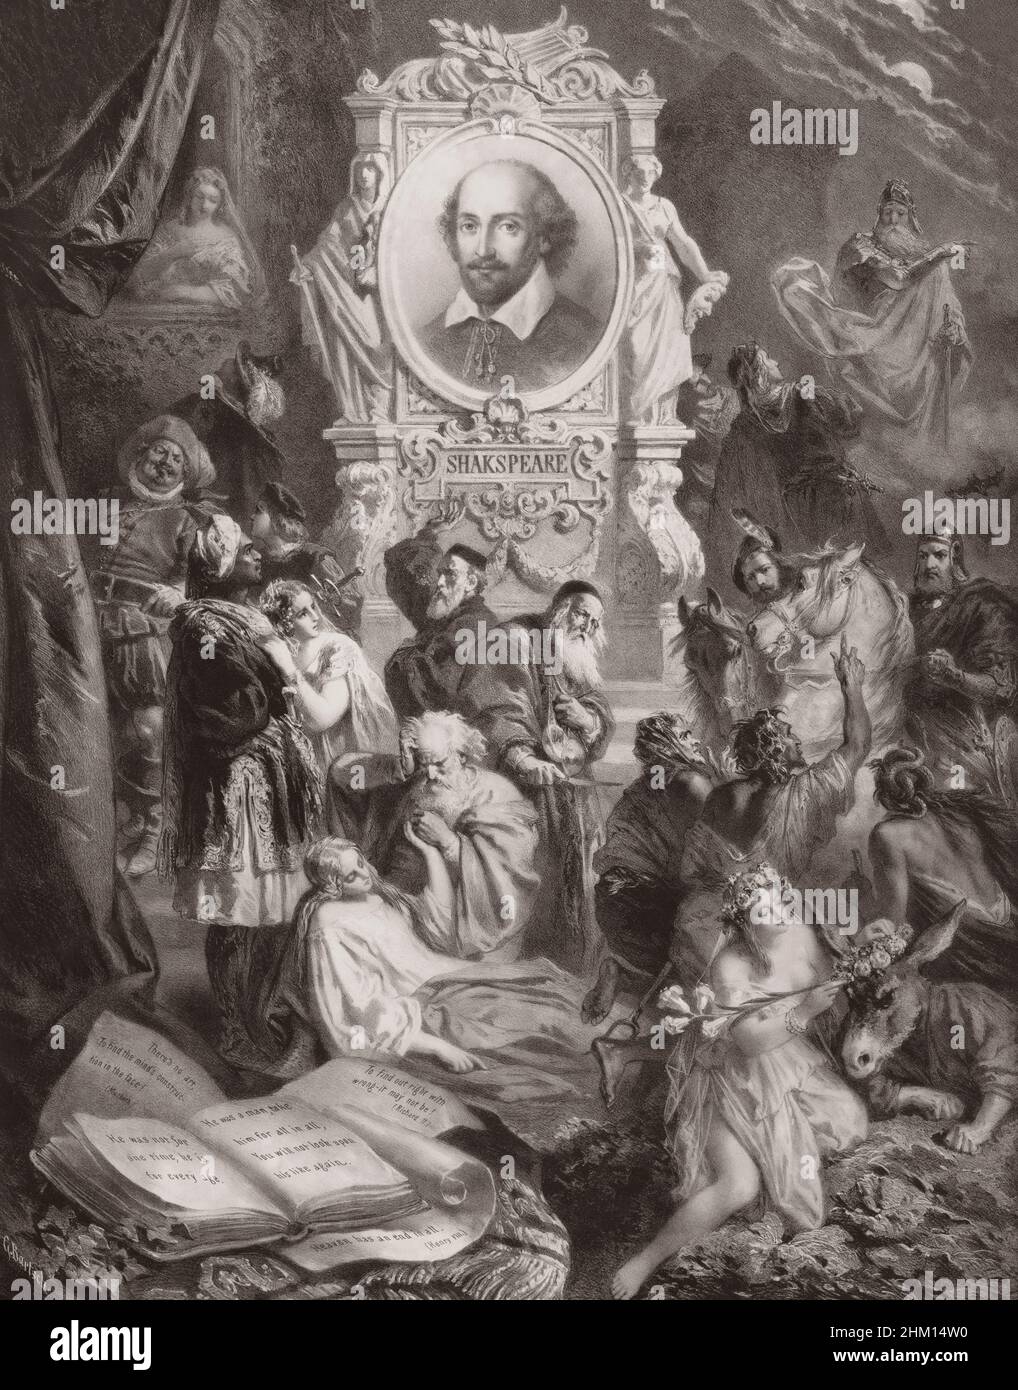 William Shakespeare avec des personnages de ses pièces, après G. Bartsch, 19th siècle Banque D'Images